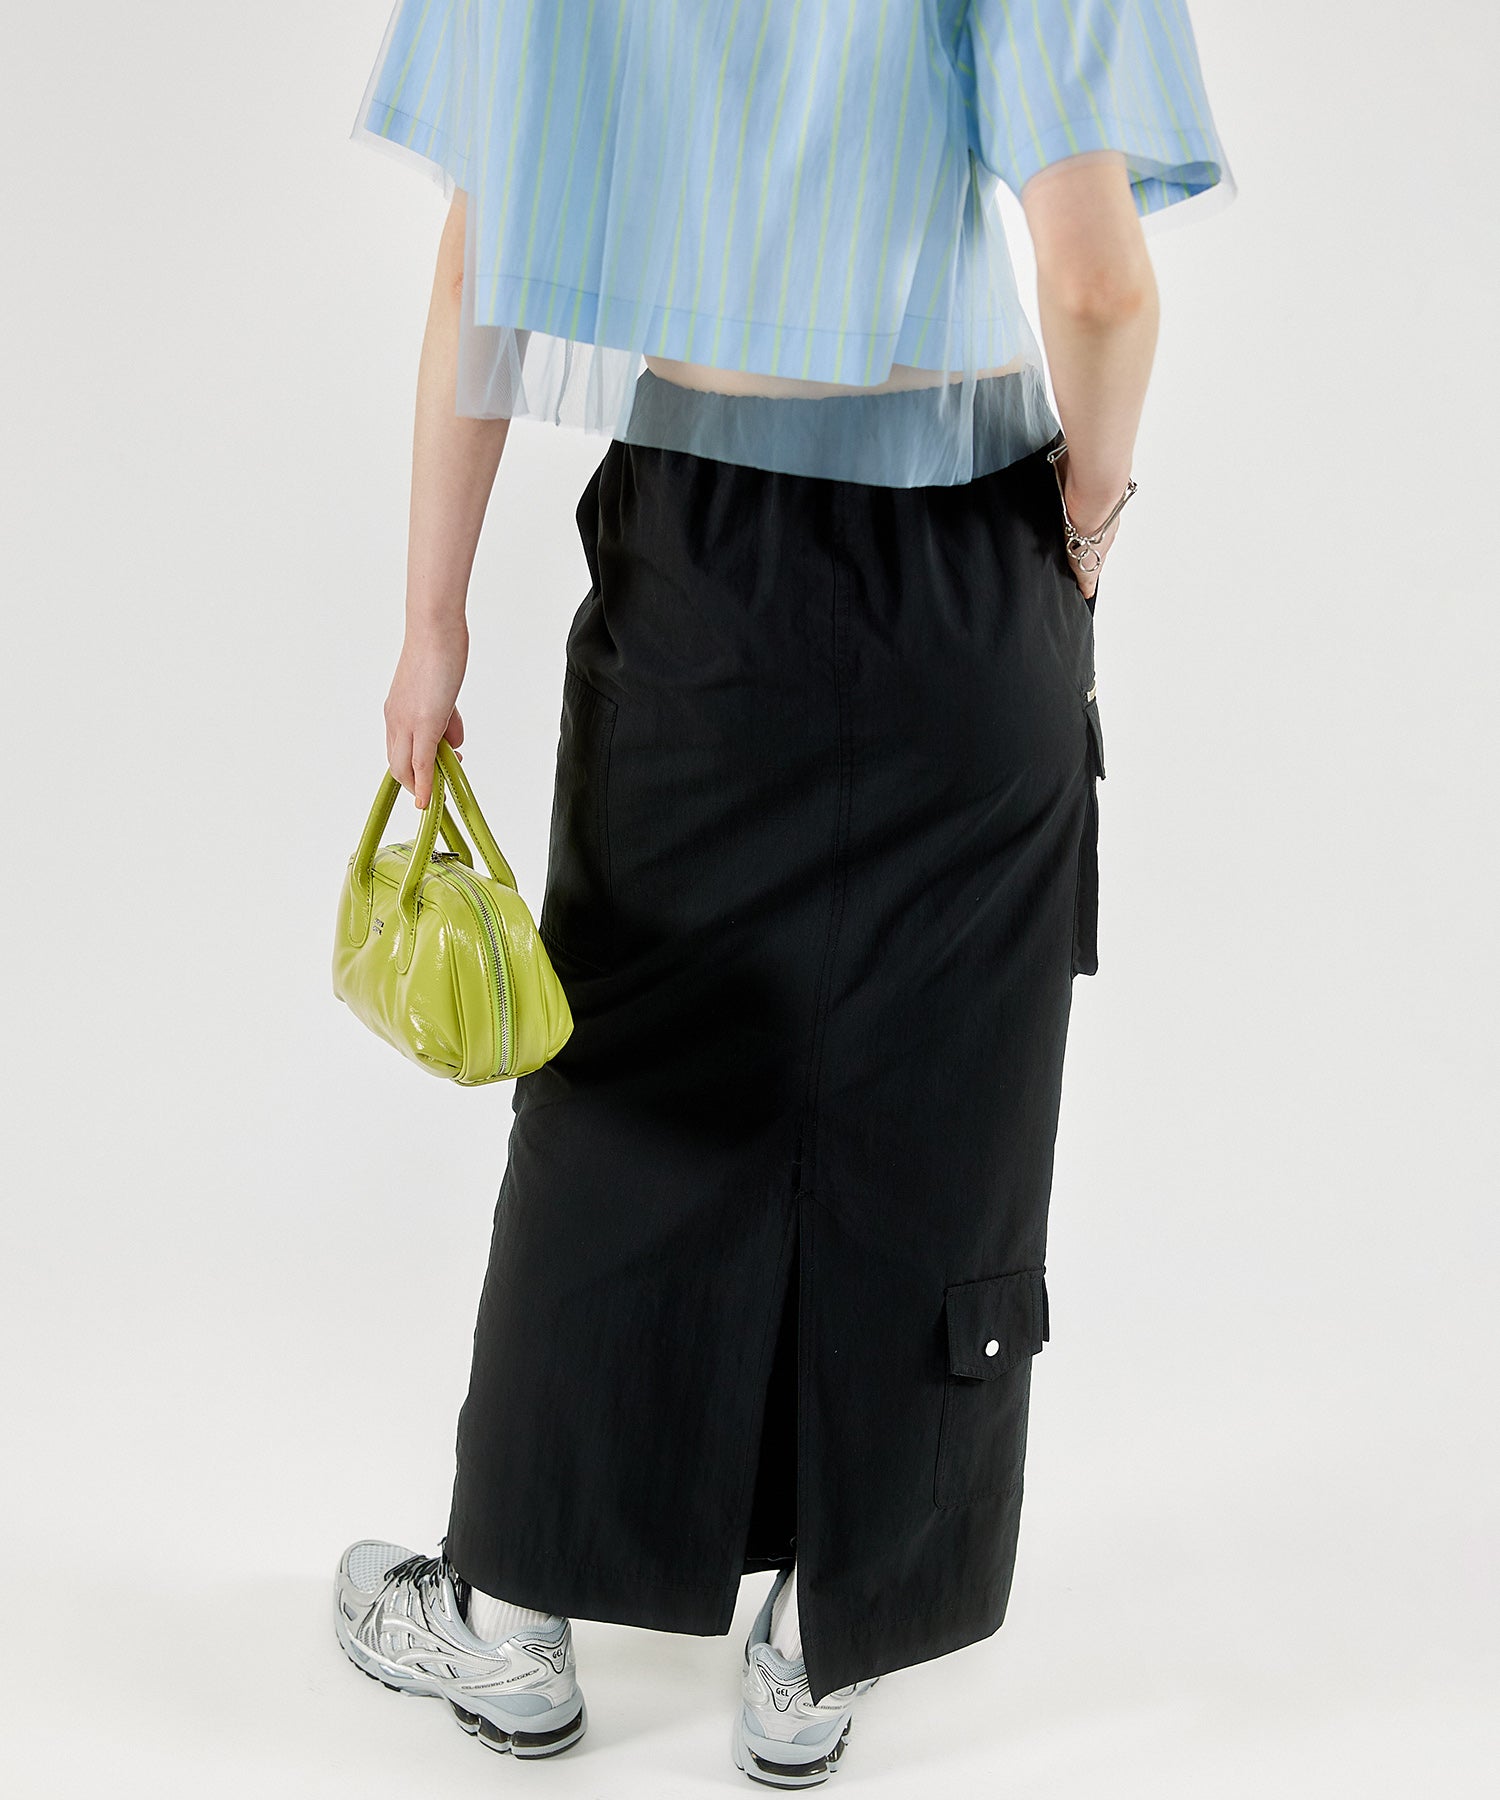 Pocket Work Skirt